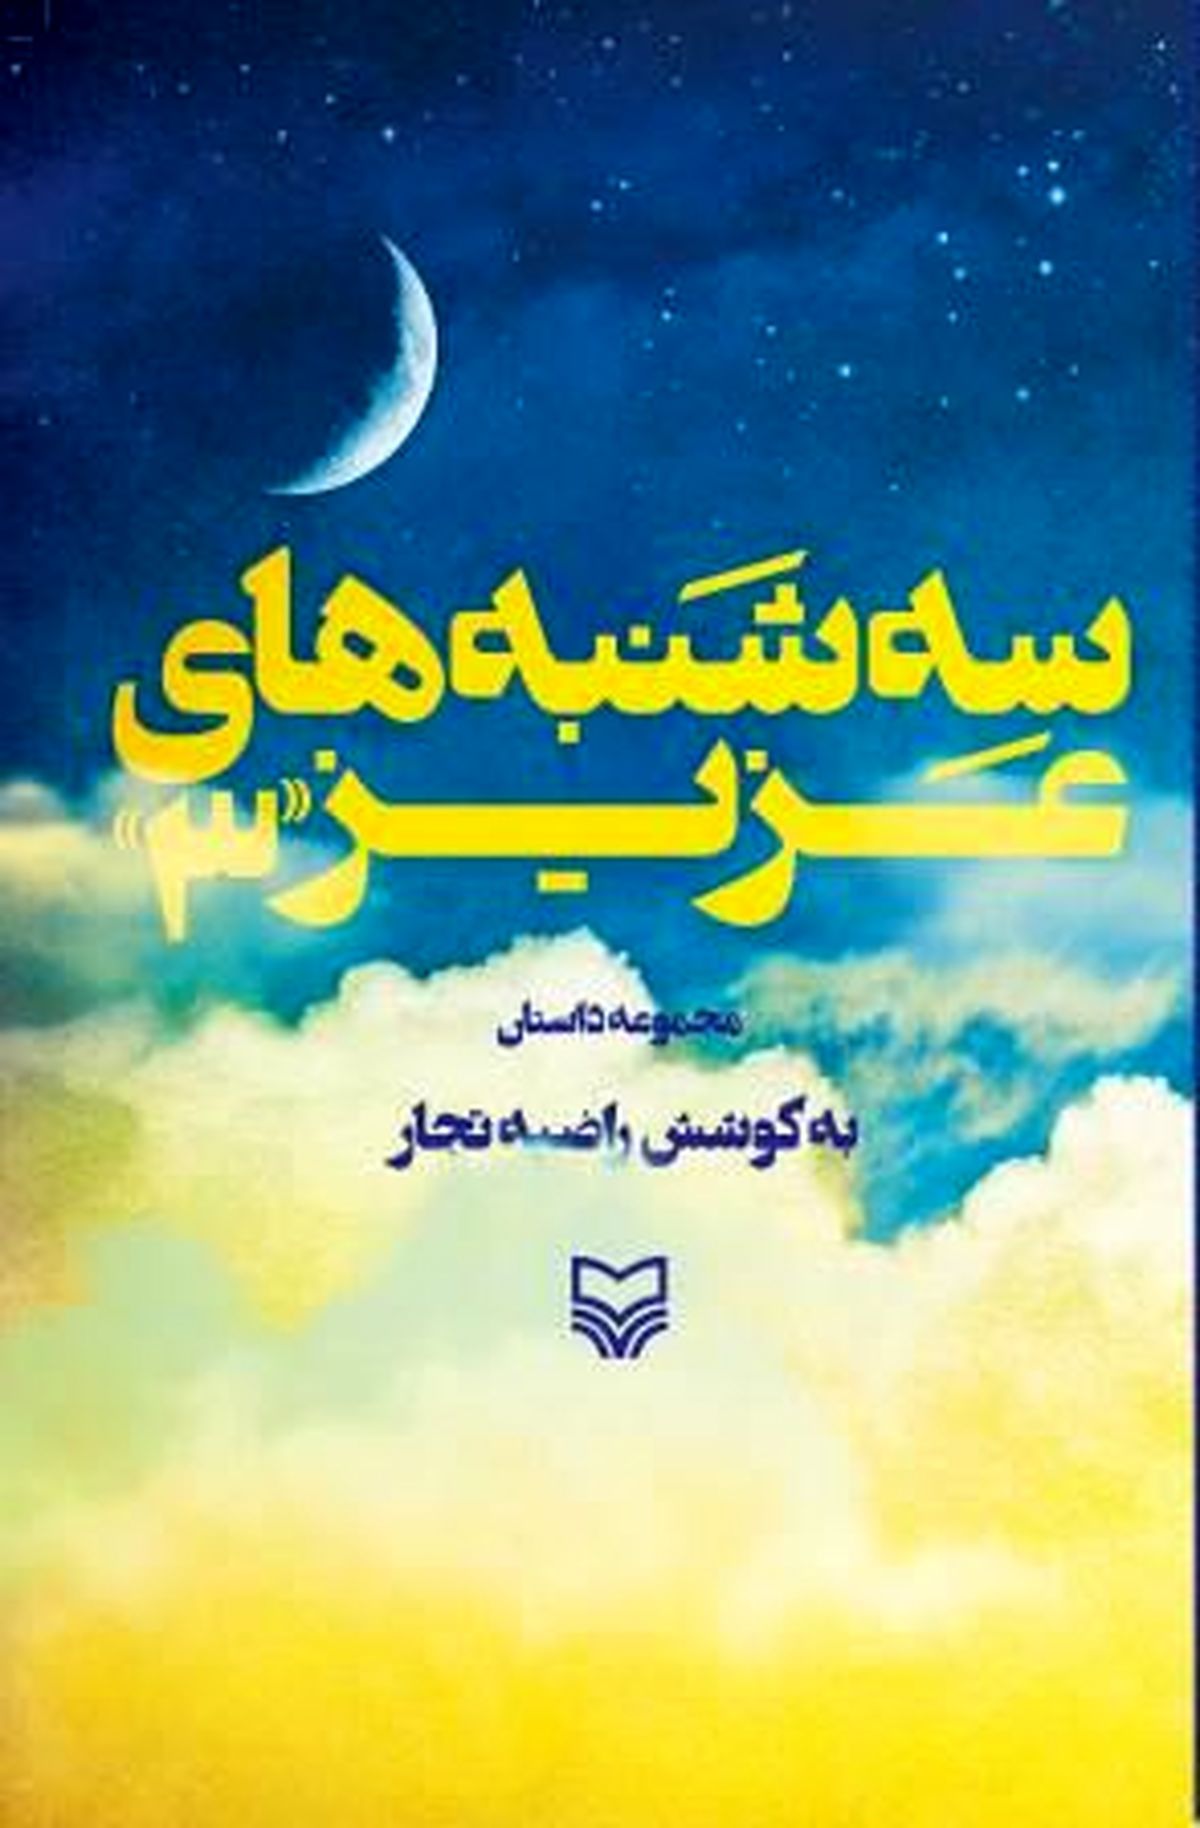 کتابی که پرفروش سوره مهر است/ روایت نویسندگان از سه‌شنبه‌های دوست داشتنی